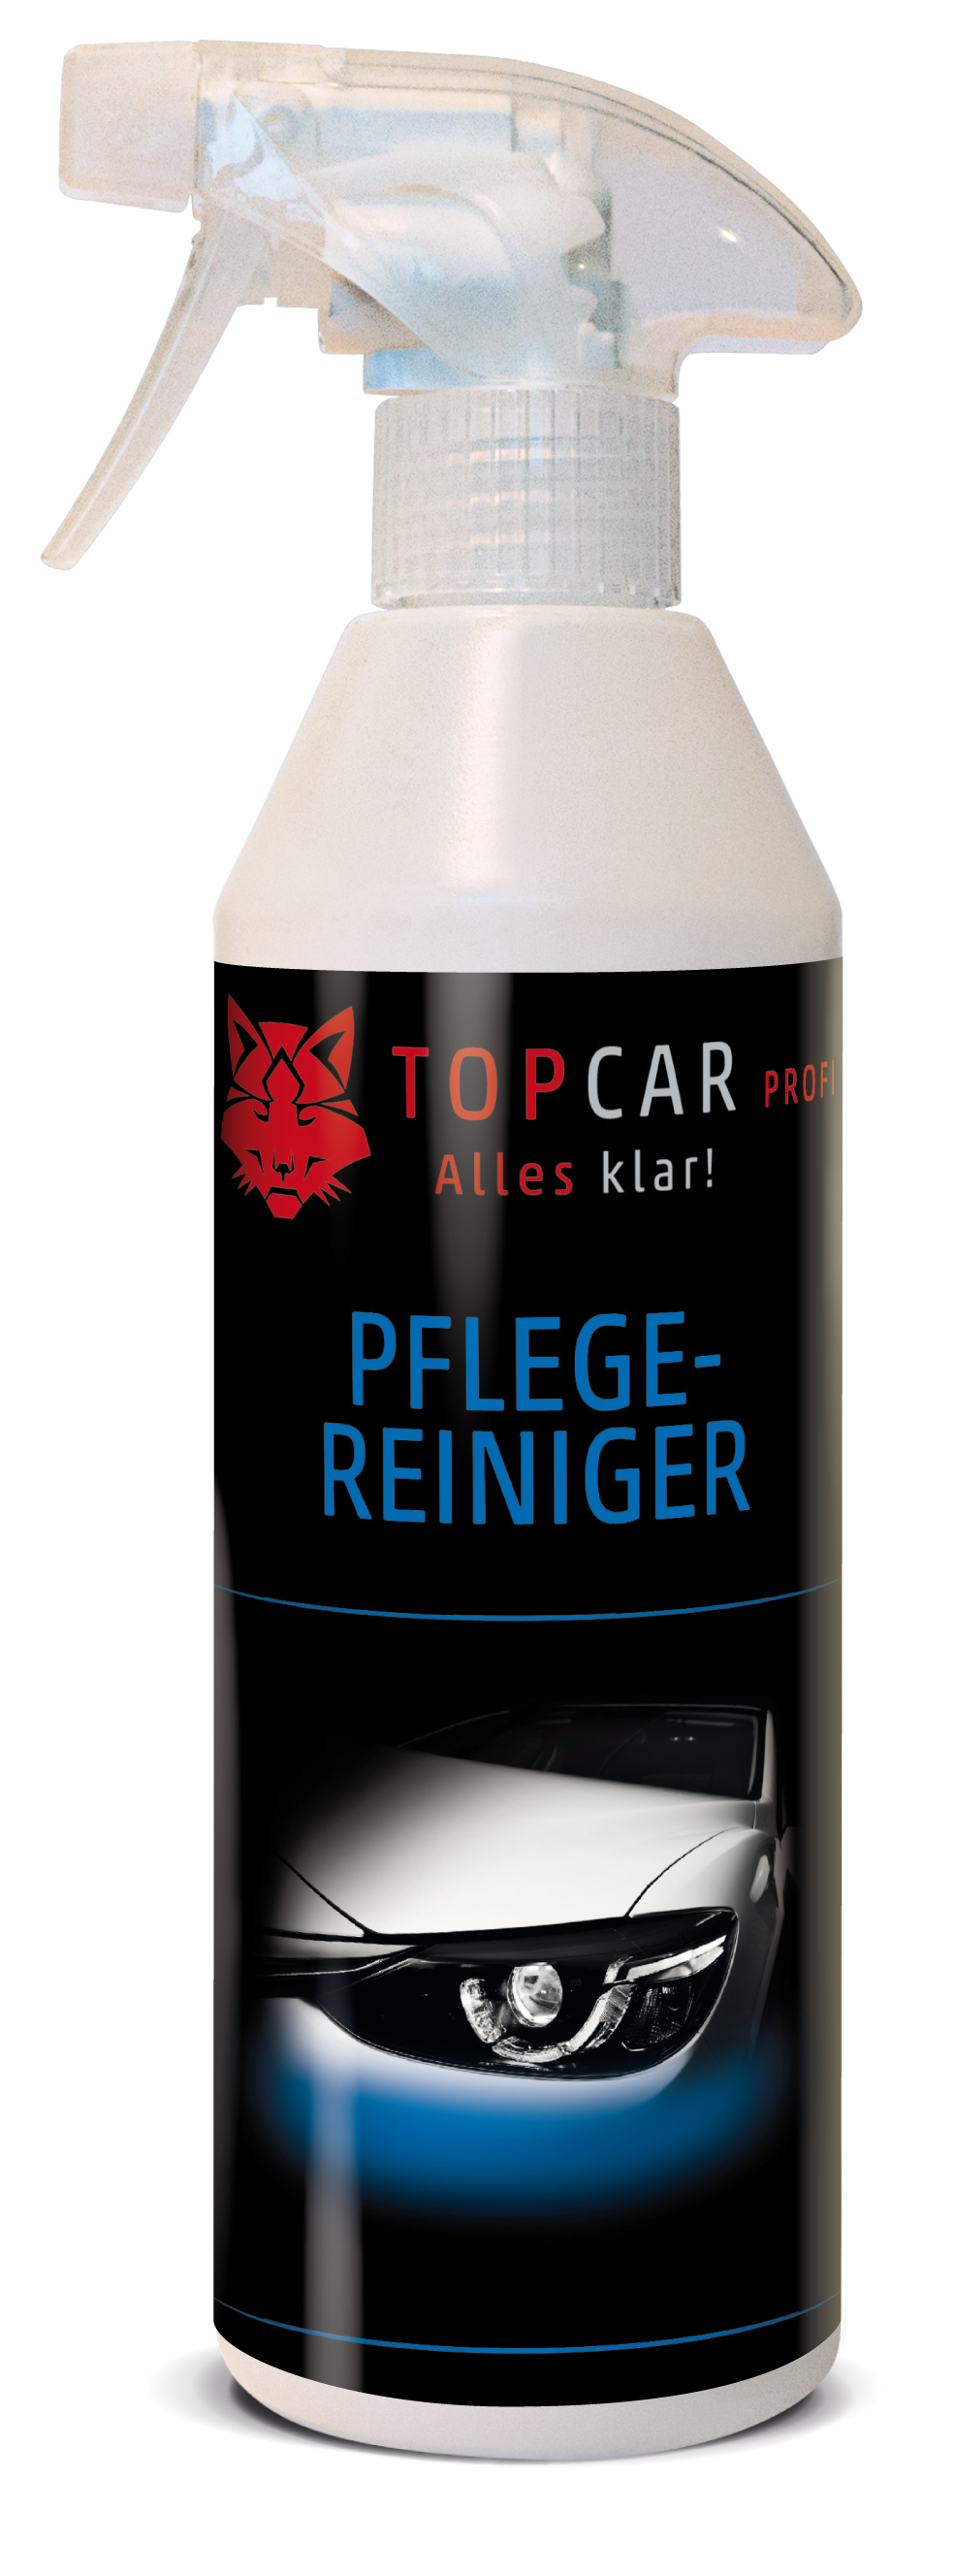 TOP CAR Pflegereiniger 500ml Sprühflasche - Weigola Hygienevertrieb -  - Weigola Hygienevertrieb